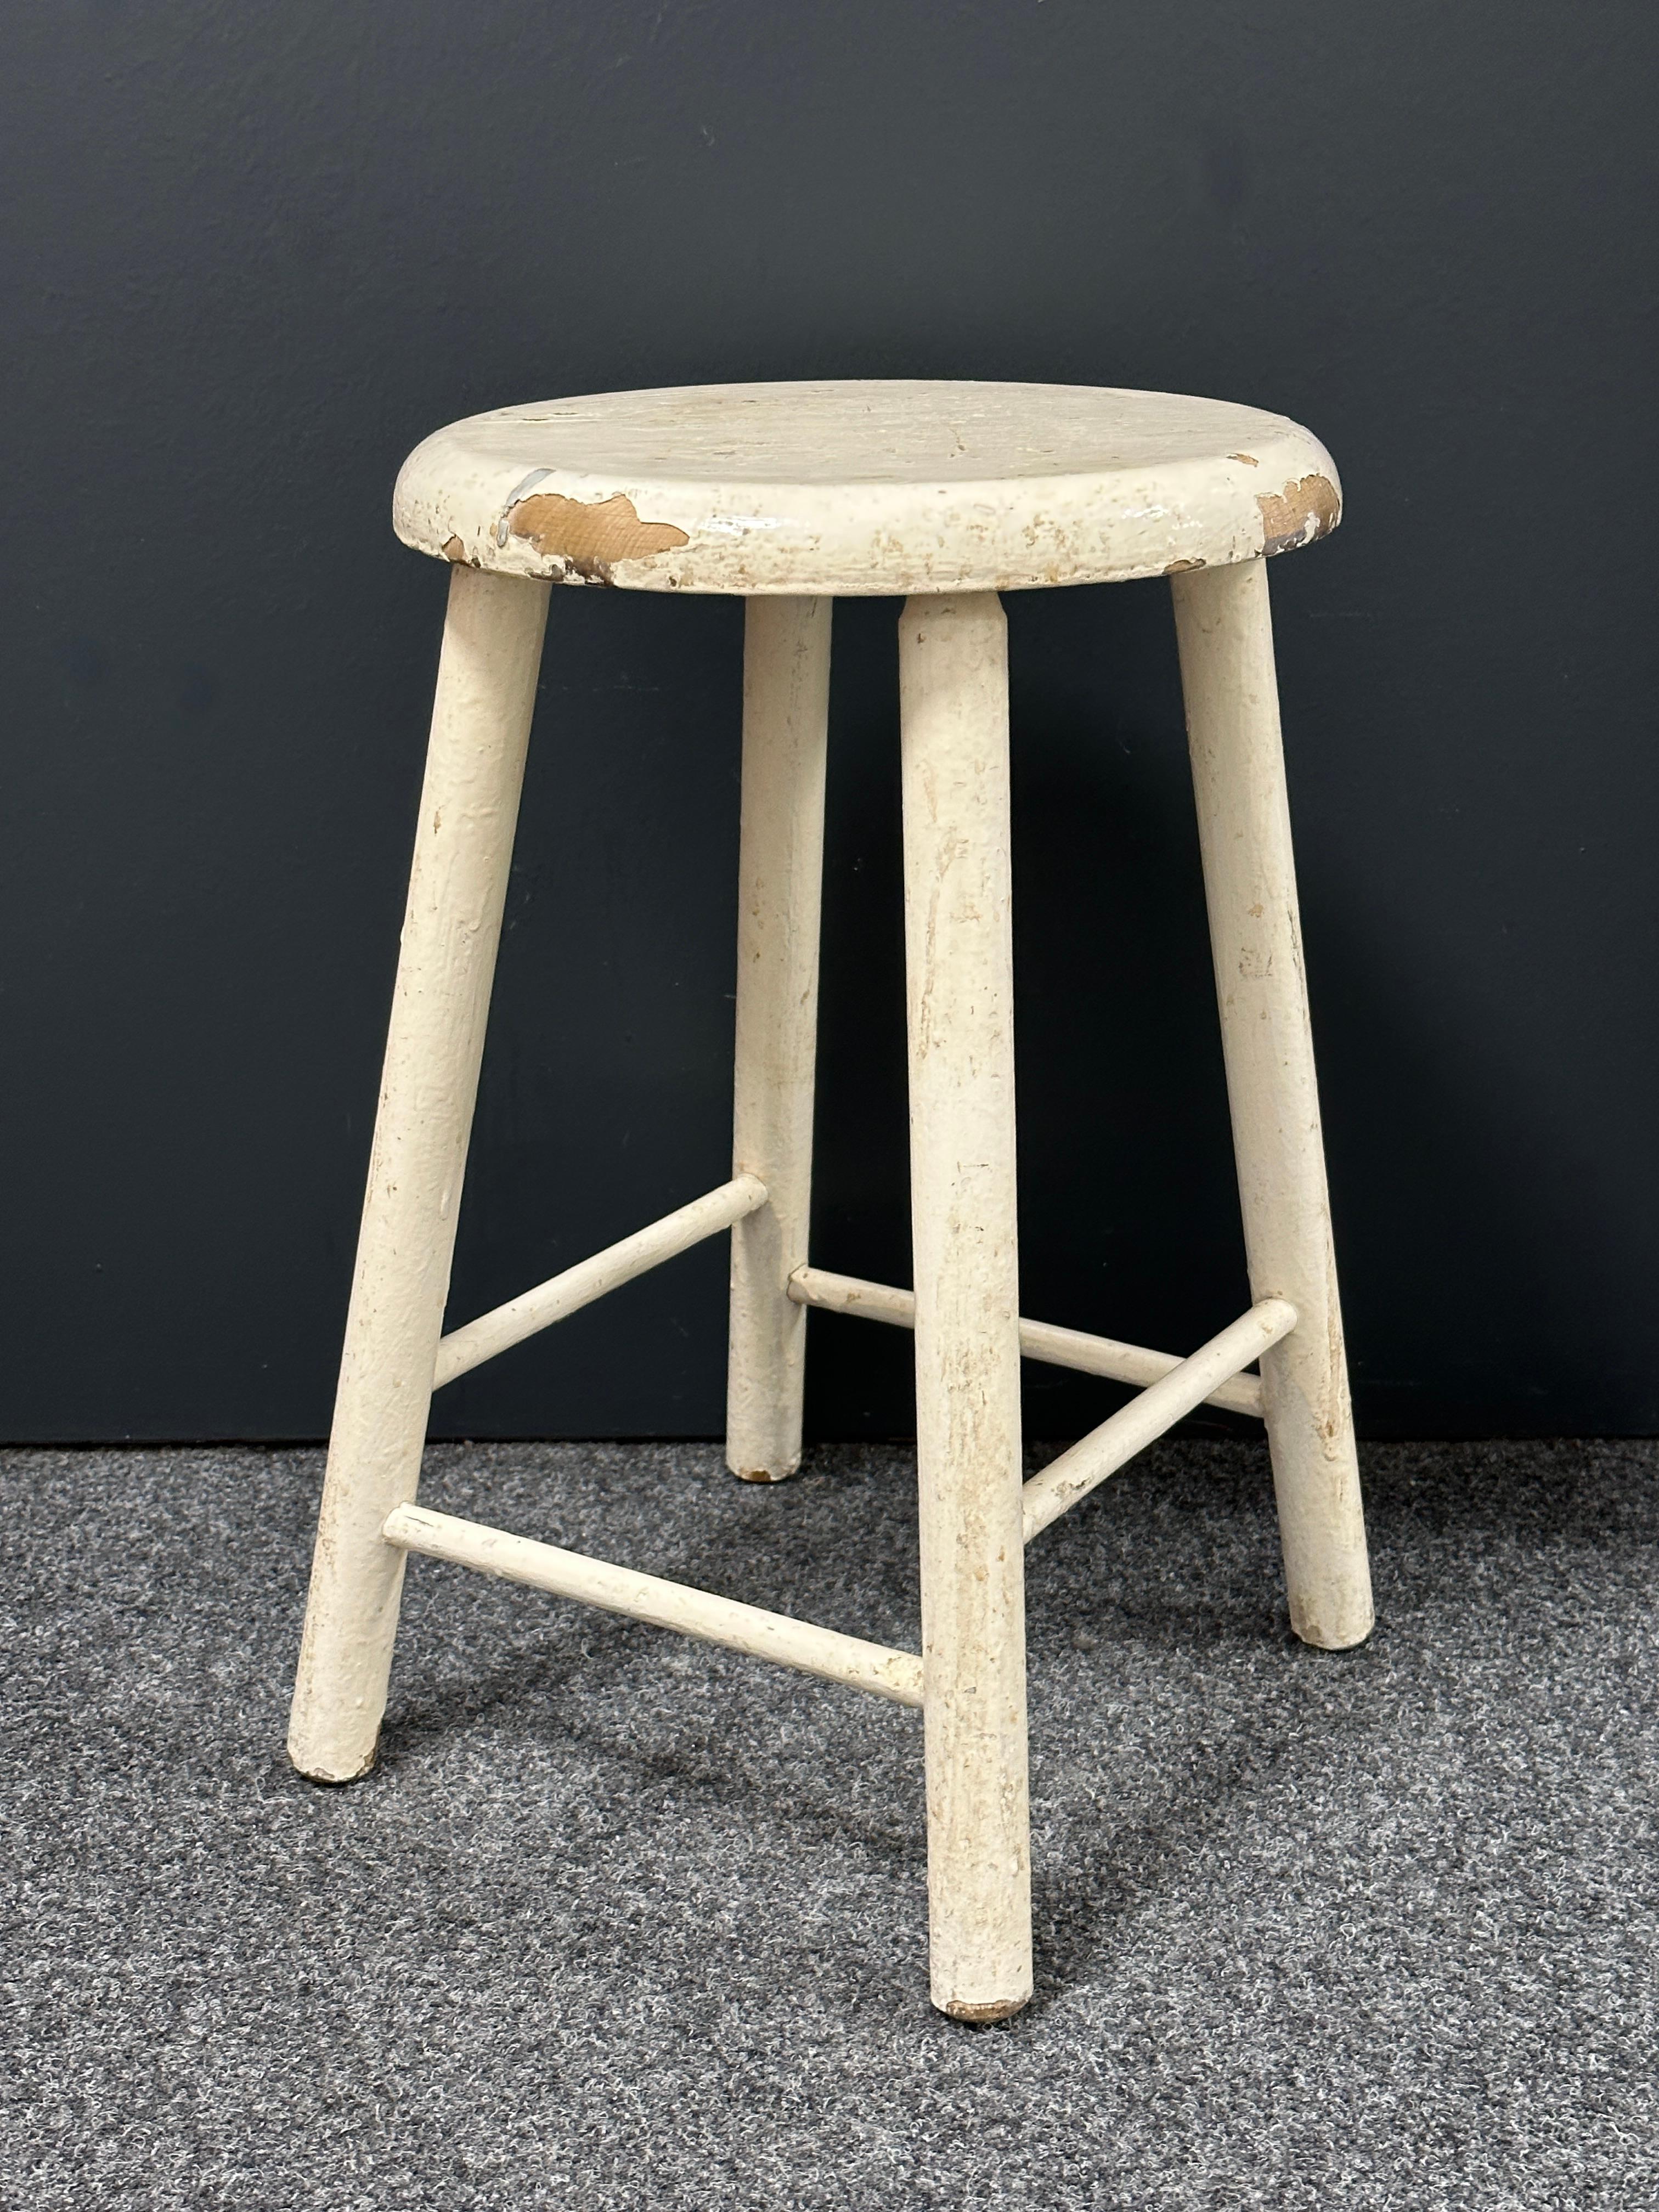 Dieser 4-beinige Wabi-Sabi-Werkstatthocker aus Deutschland aus dem 20. Jahrhundert ist ein hervorragendes Beispiel für diesen Stil. Die runde, rustikal anmutende Sitzfläche ist aus Holzbohlen gefertigt und wird von vier Spindelbeinen getragen. Der